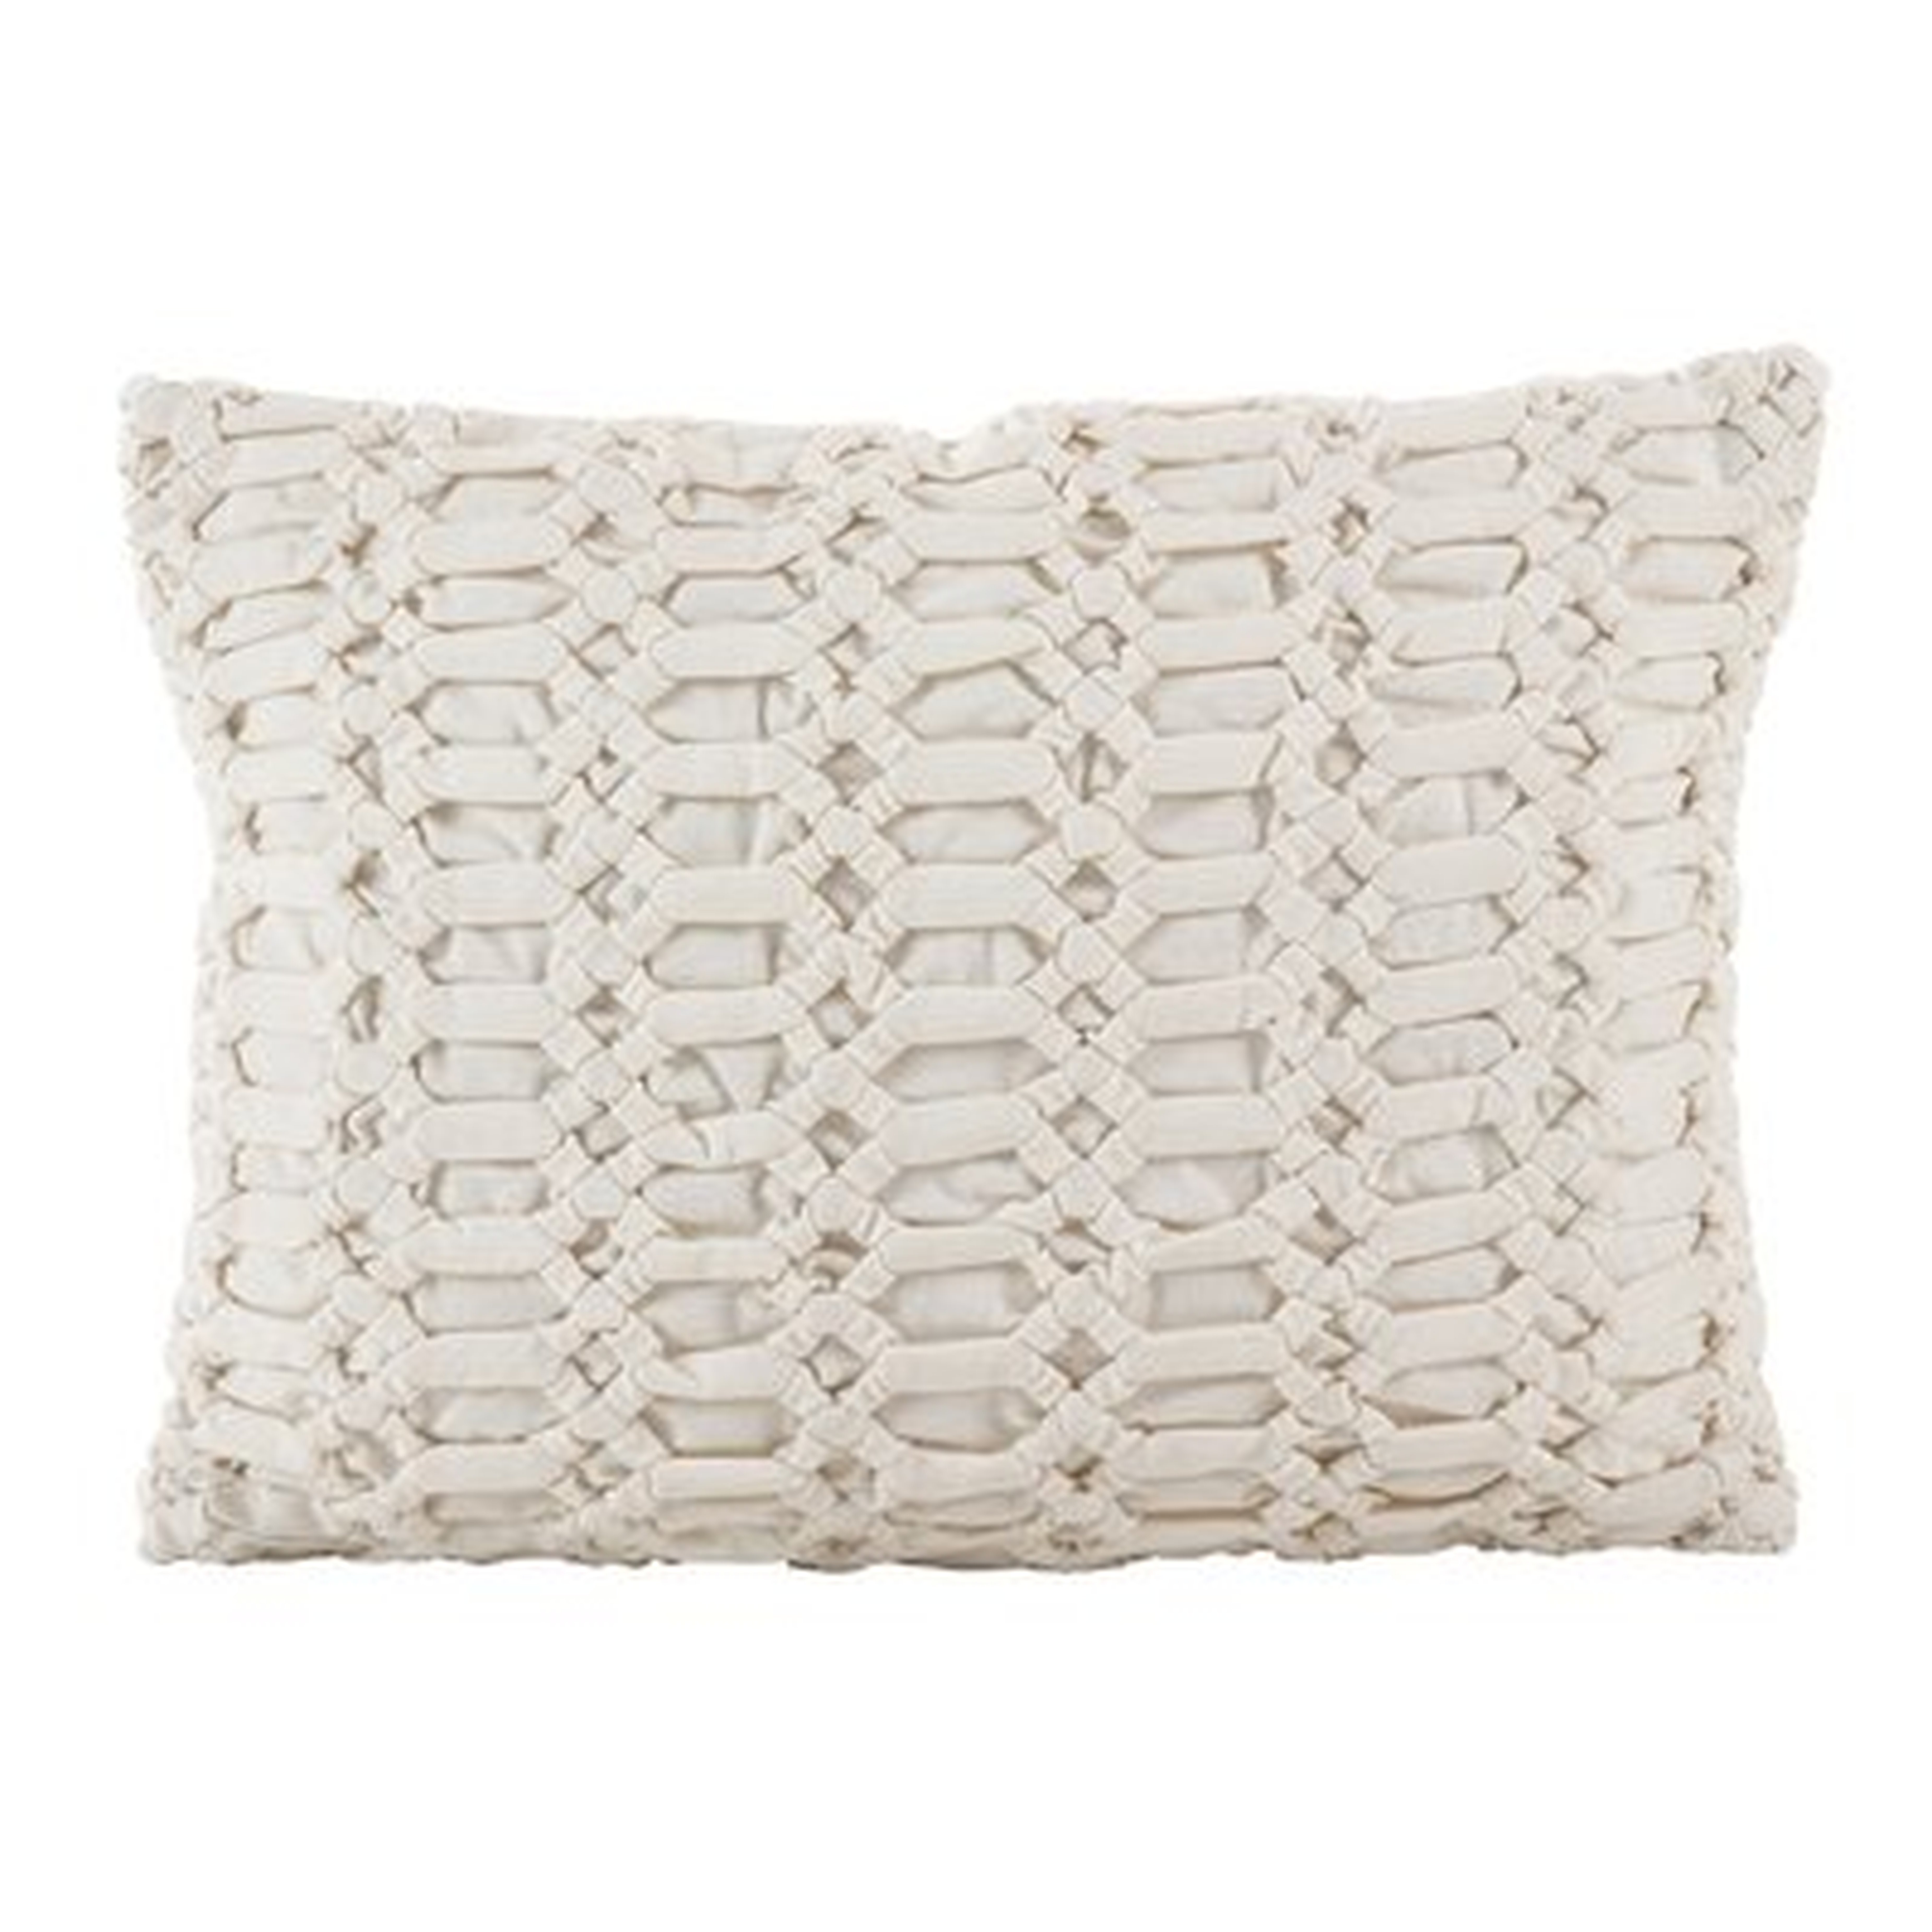 Kirby Smocked Textured Design Decorative Cotton Lumbar Pillow - Wayfair